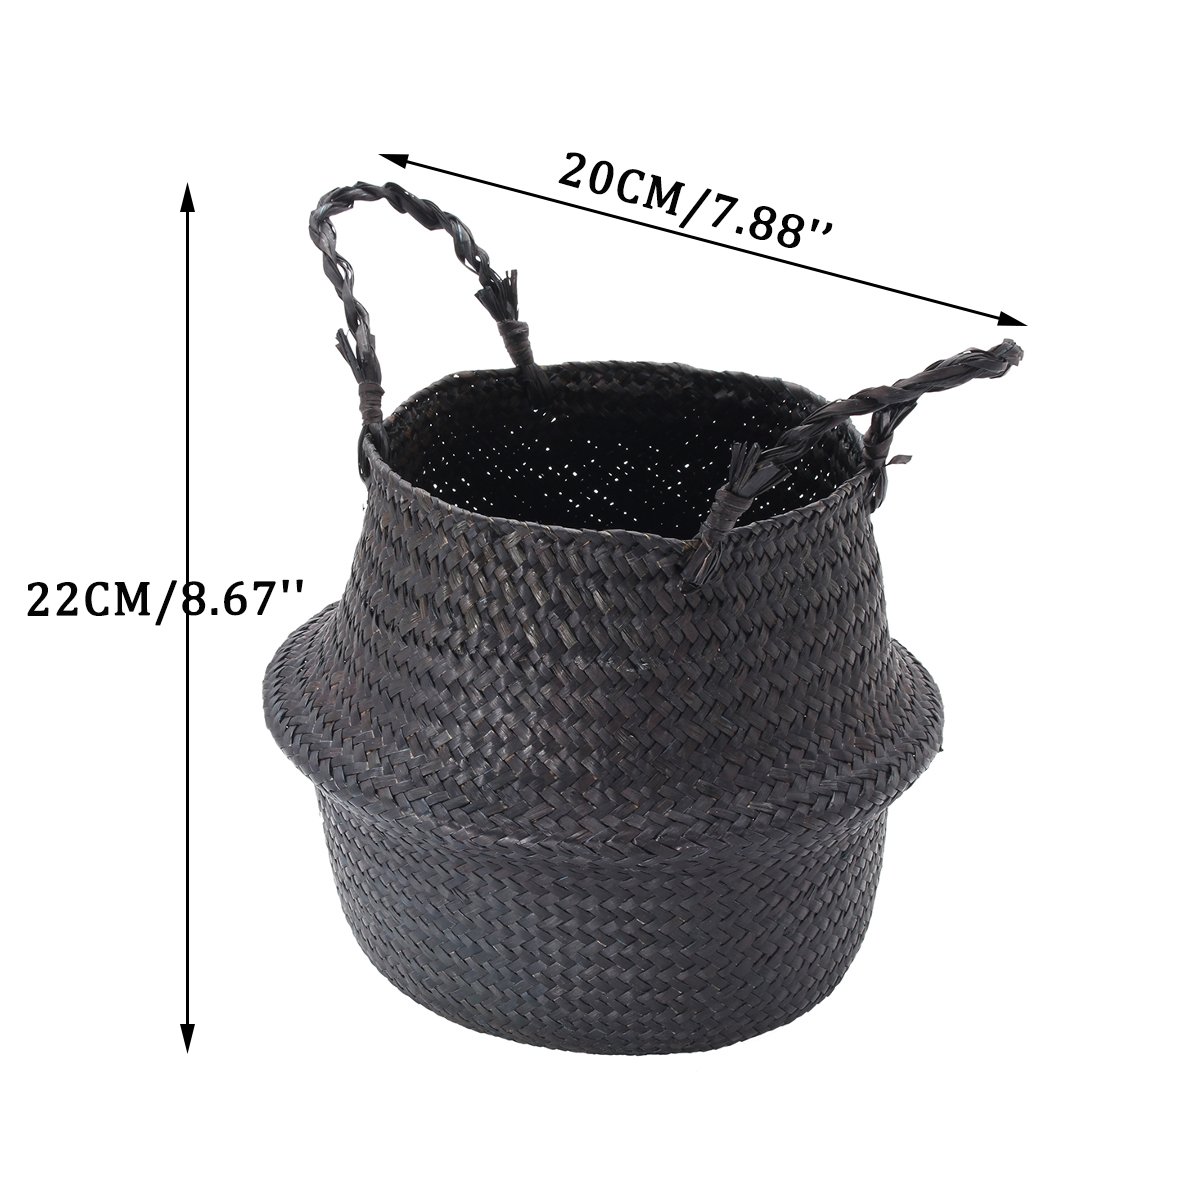 Black-Seagrass-Belly-Basket-Storage-Holder-Plant-Pot-Bag-Home-Decoration-Storage-Baskets-1263488